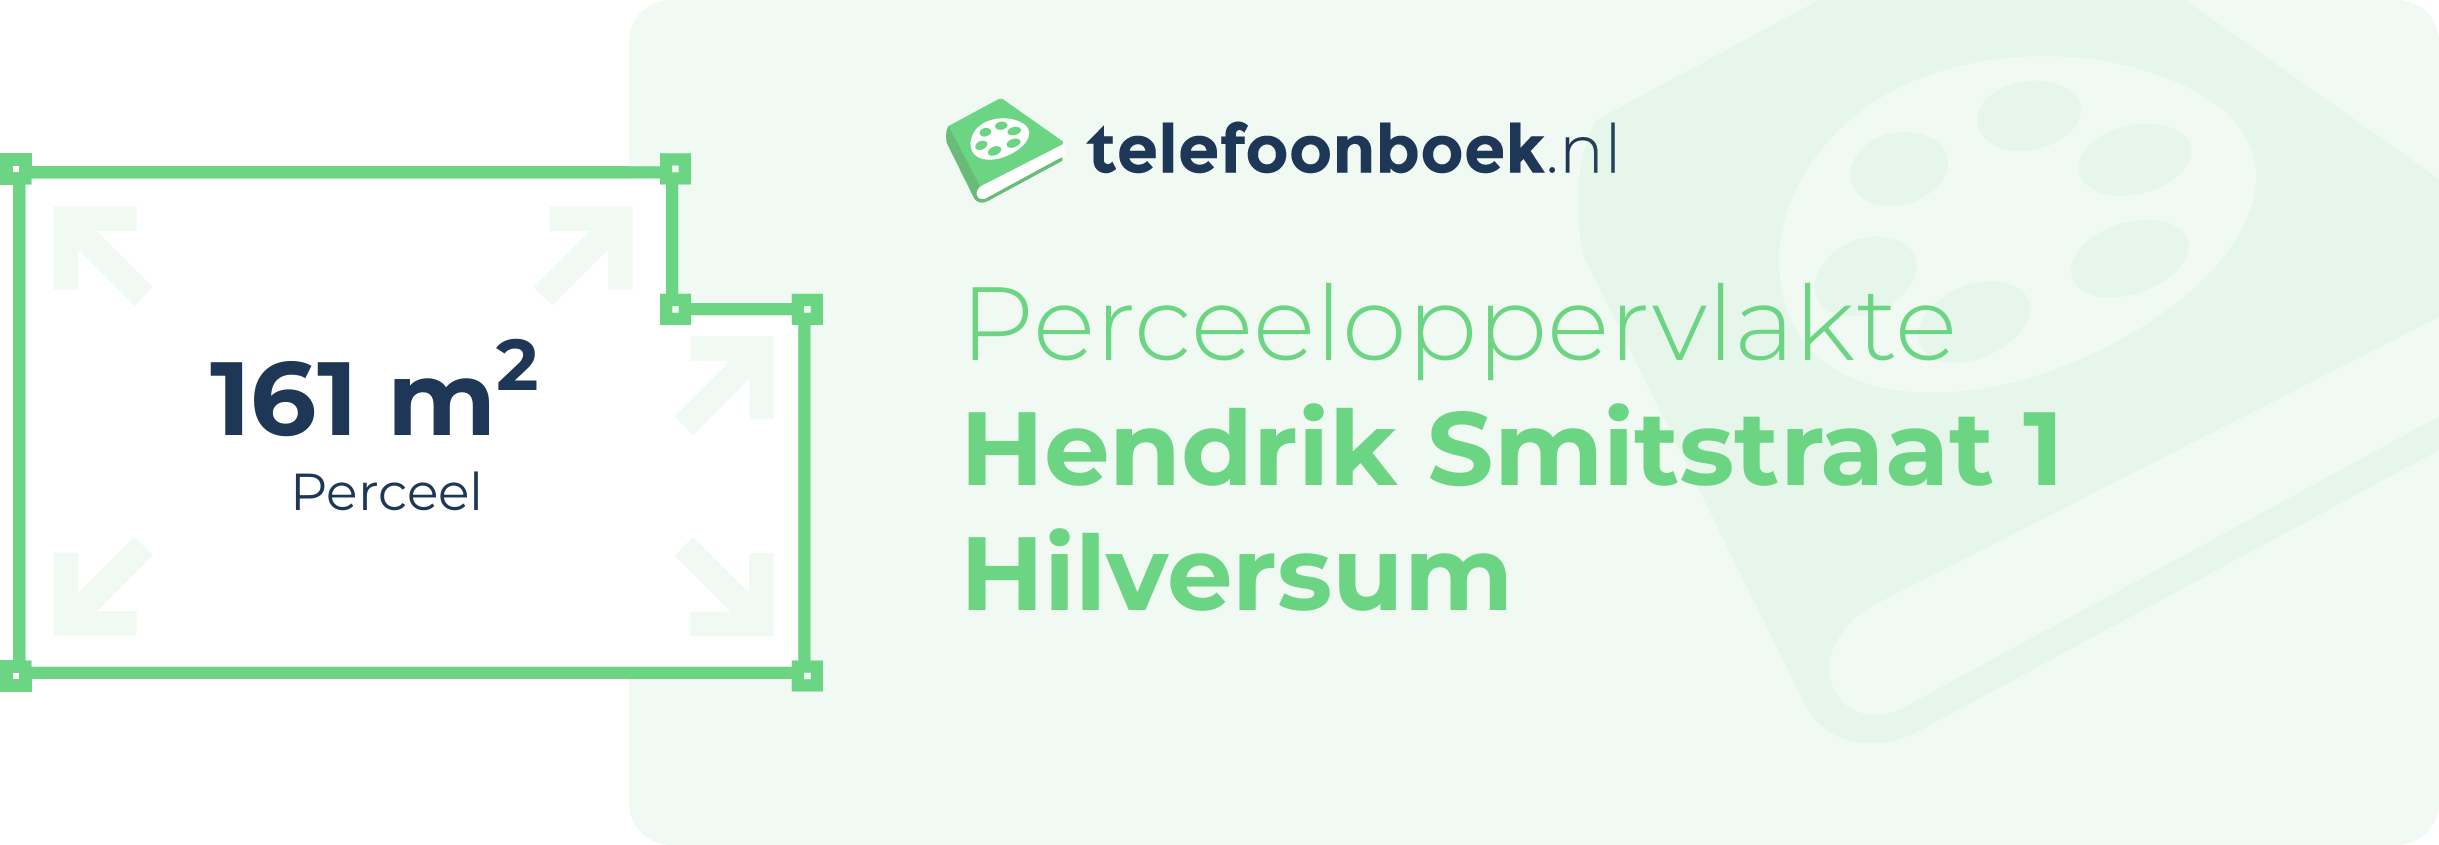 Perceeloppervlakte Hendrik Smitstraat 1 Hilversum